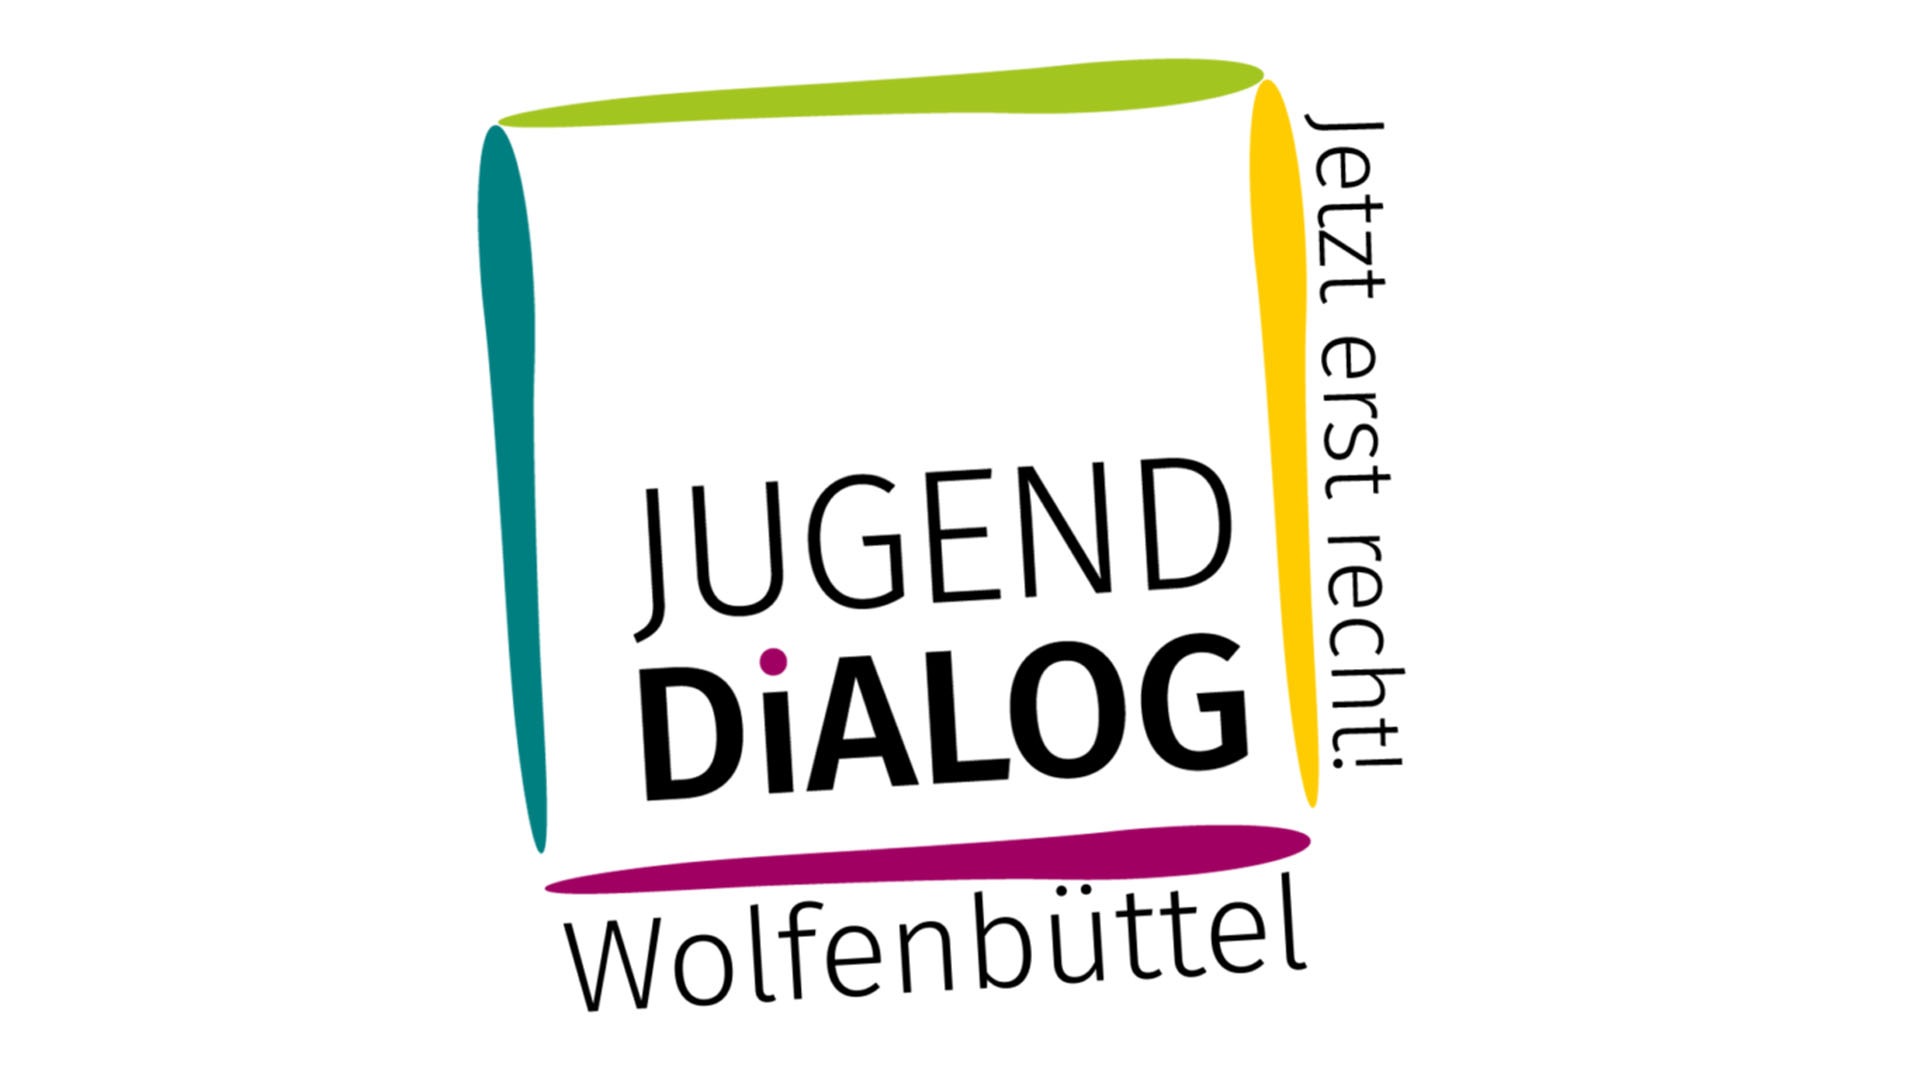 In einem Quadrat aus bunten Strichen steht der Schriftzug "Jugend Dialog". Rechts daneben steht der Schriftzug" Jetzt erst recht!" und drunter der Schriftzug "Wolfenbüttel".